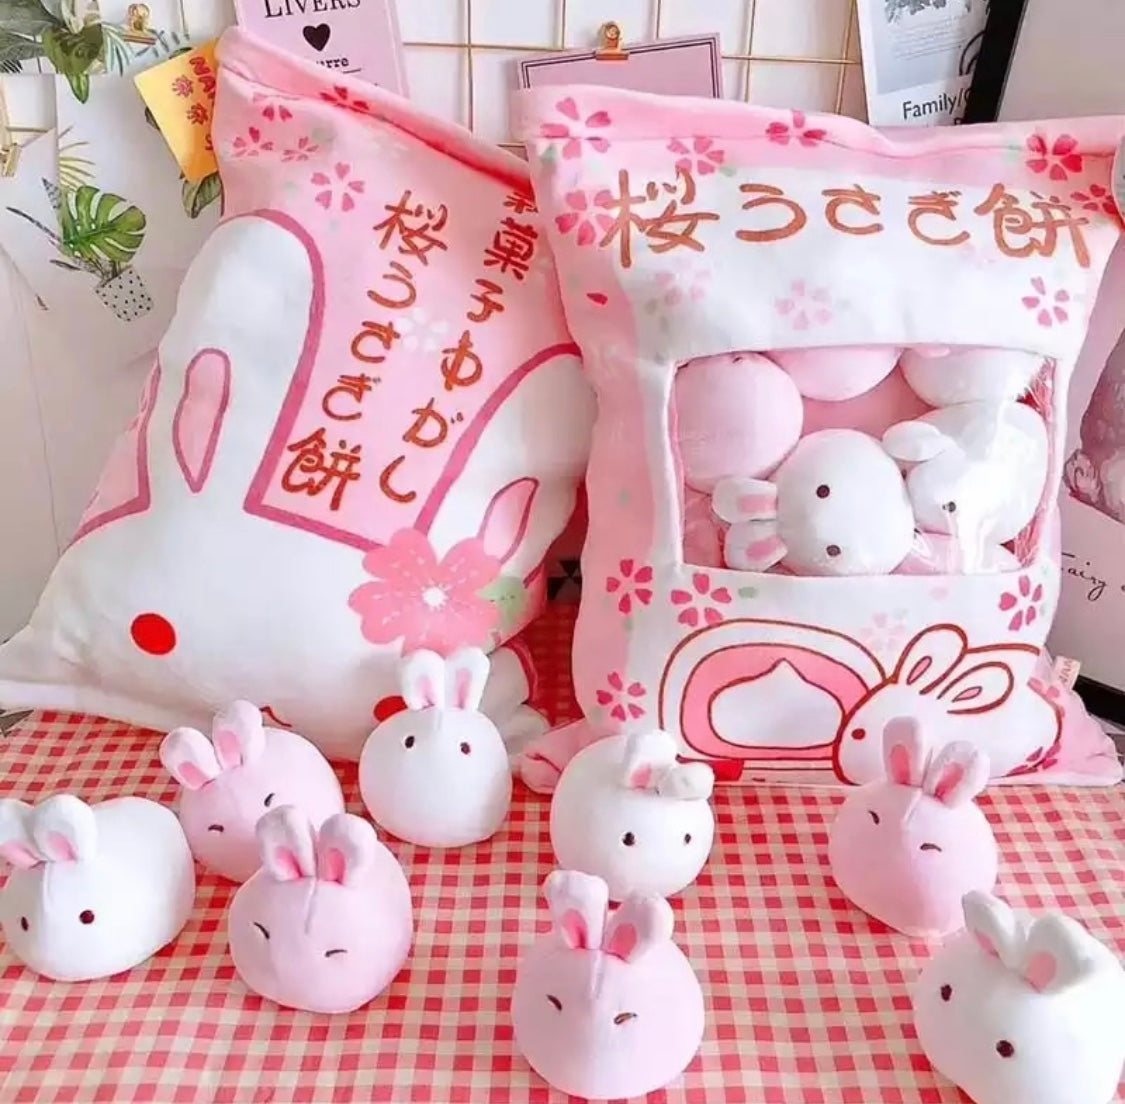 Bag of Bunny Plushies